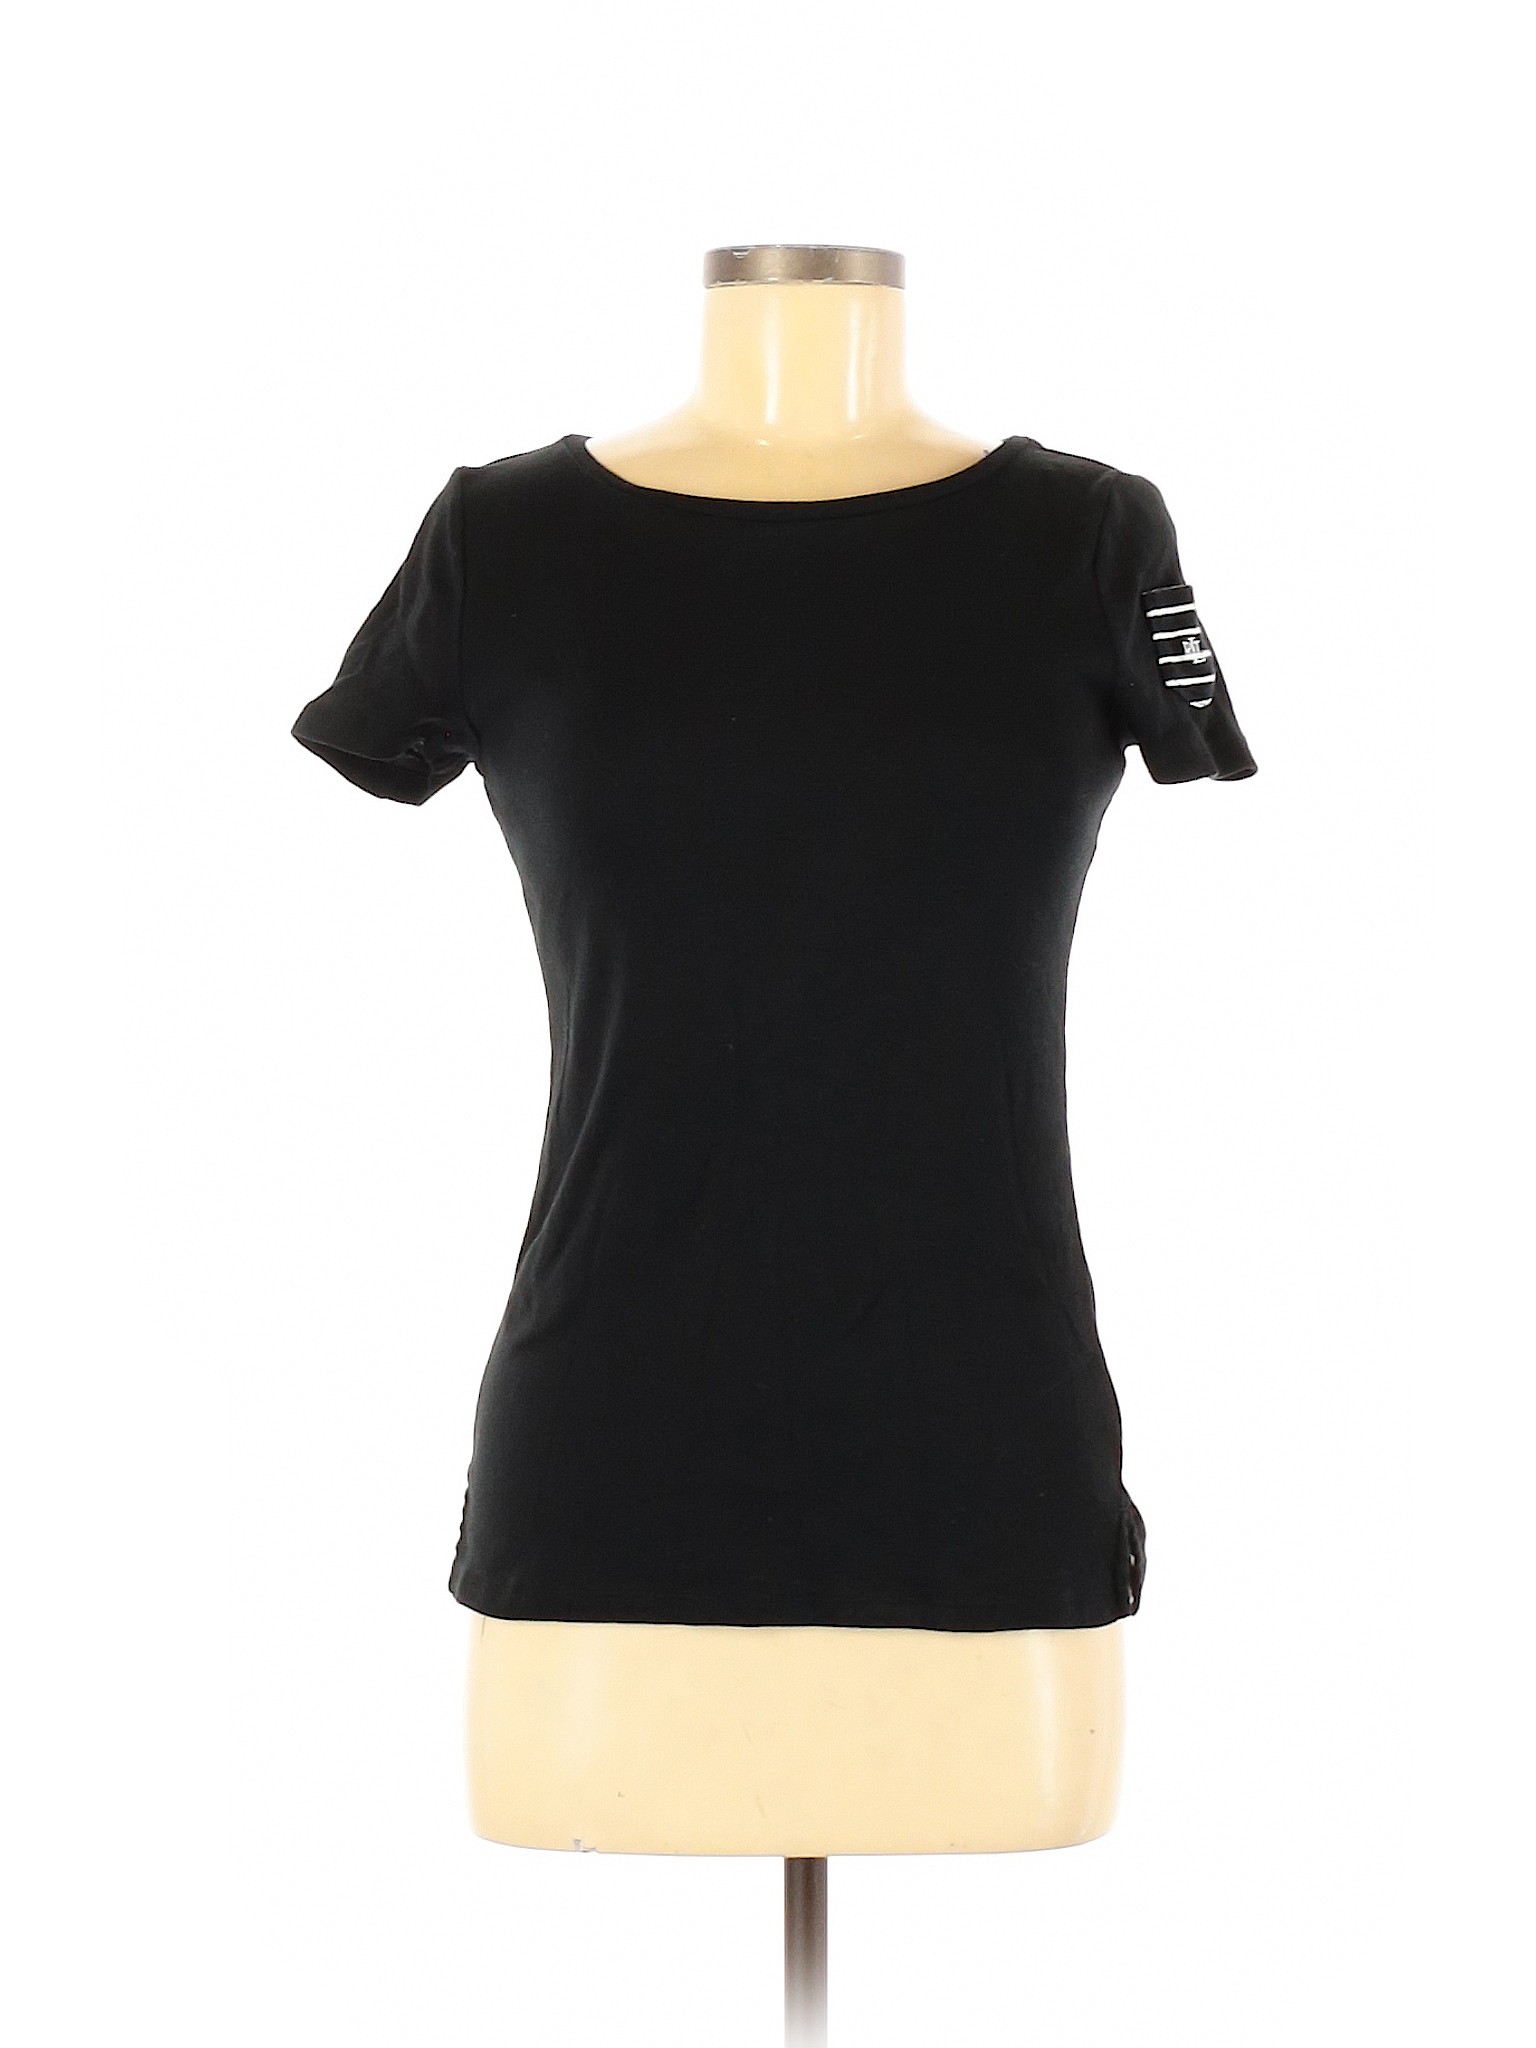 Lauren by Ralph Lauren Women Black Short Sleeve T-Shirt M | eBay